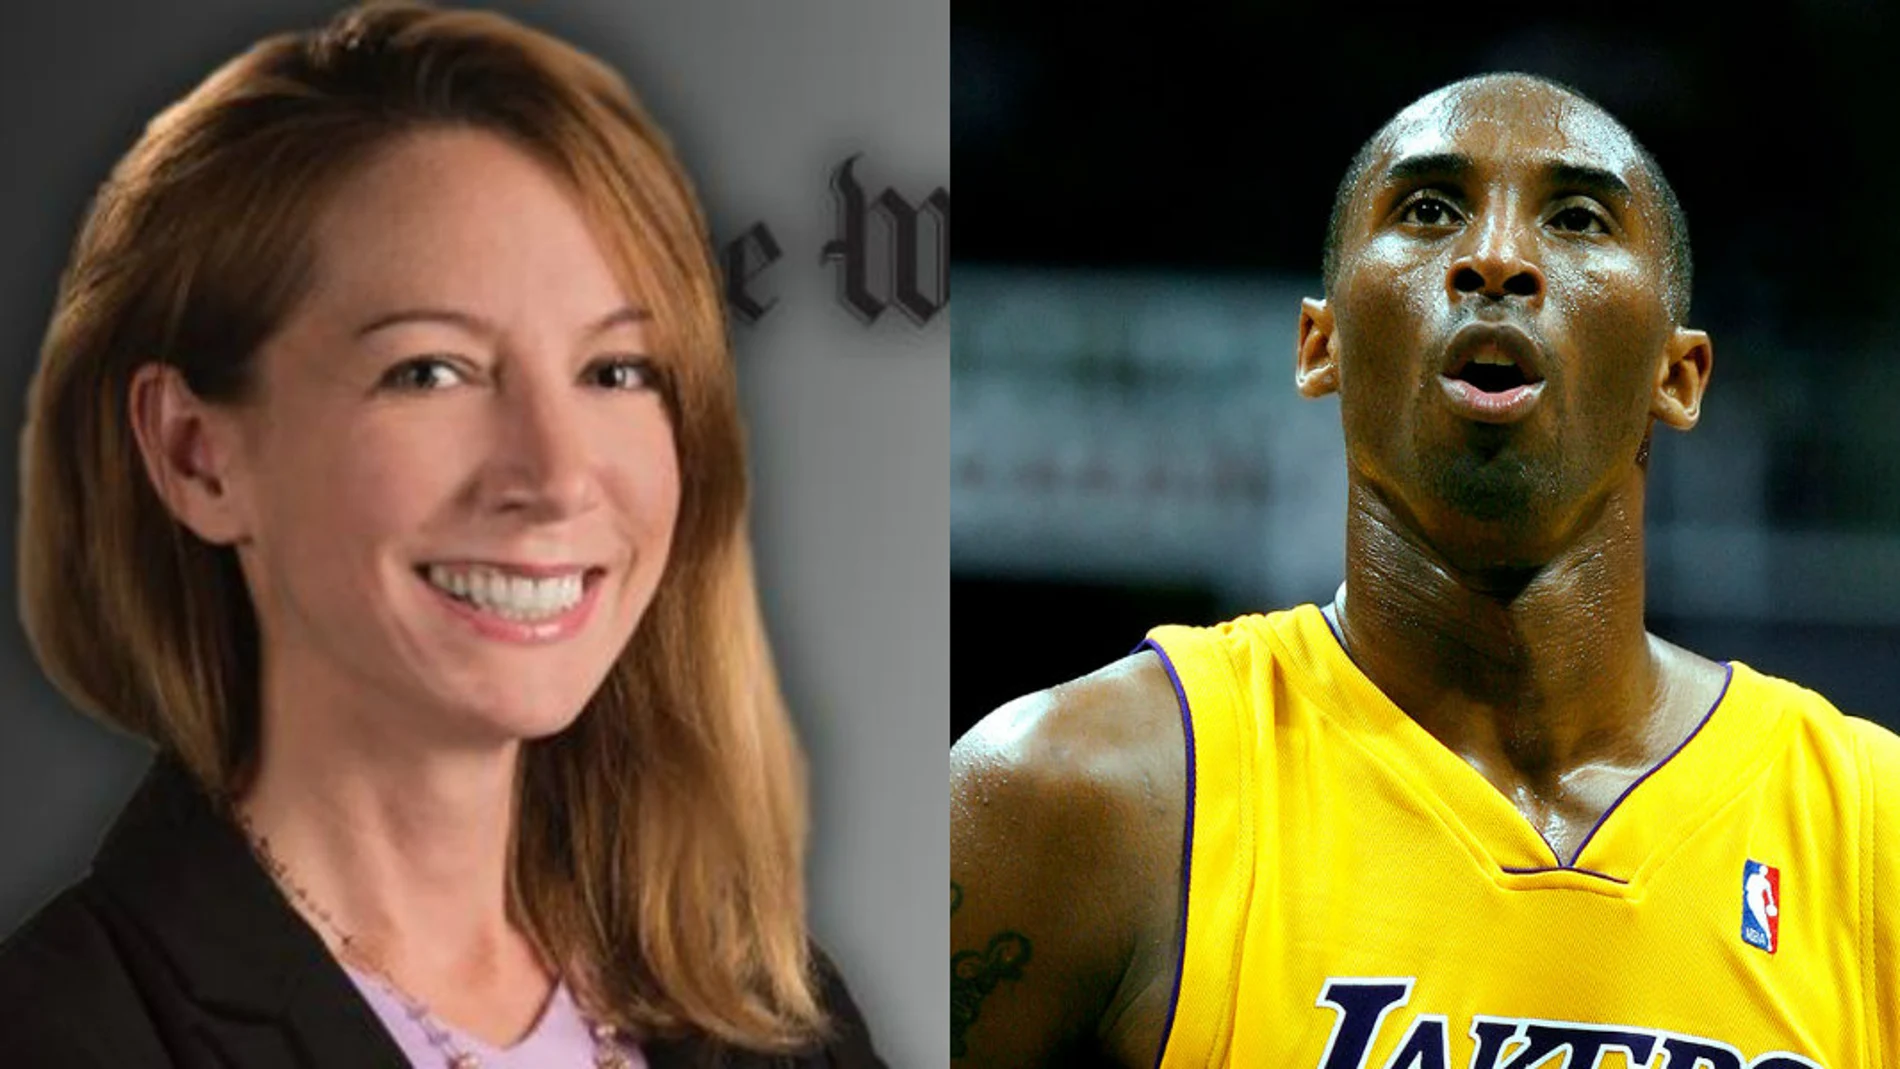 Felicia Sonmez recordó en Twitter la acusación de violación de Kobe Bryant